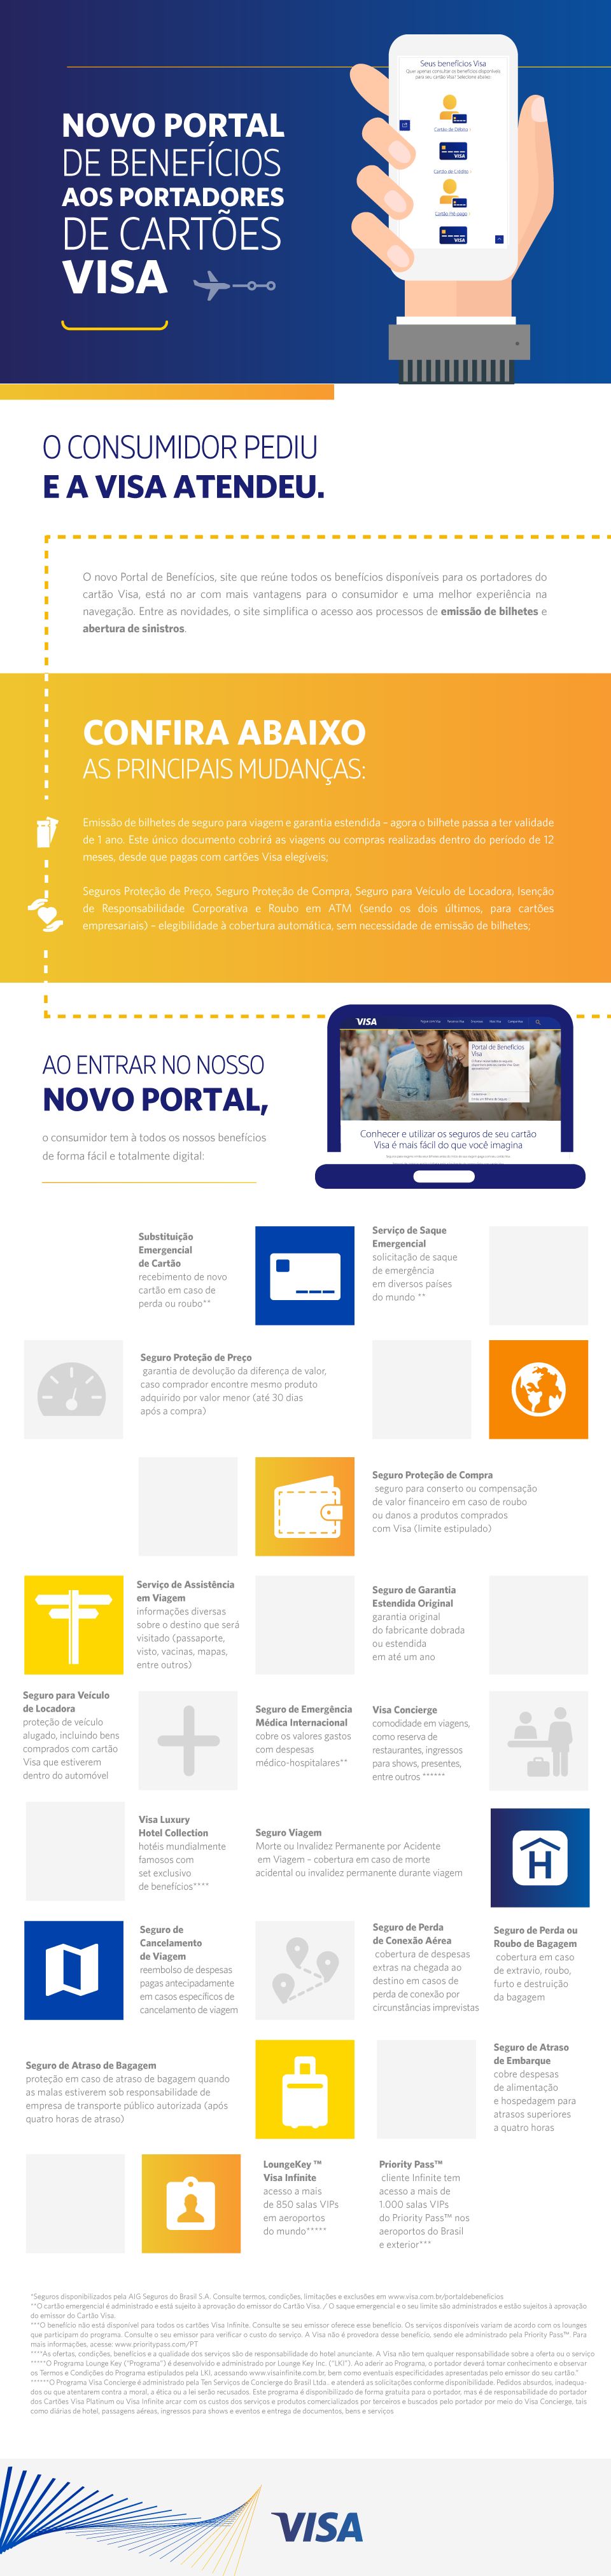 Infográfico do Novo portal de benefícios para clientes Visa